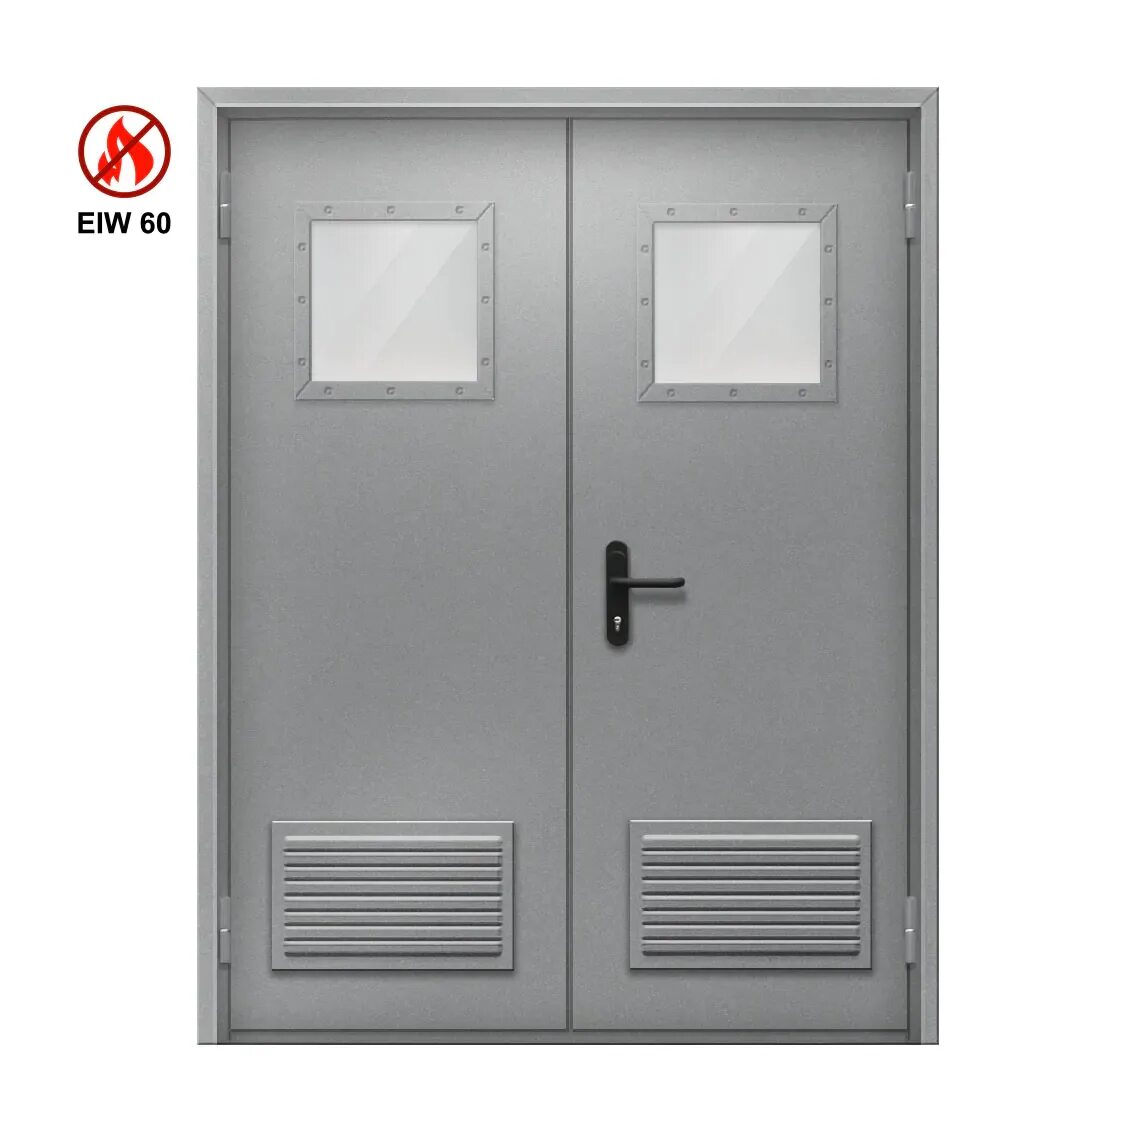 Противопожарные двери eiw 60. Противопожарная алюминиевая дверь EIW 60. EIW 60 противопожарные двери. Входные двери eiw60 противопожарные. Дверь противопожарная алюминиевая ei 30 остекленная.